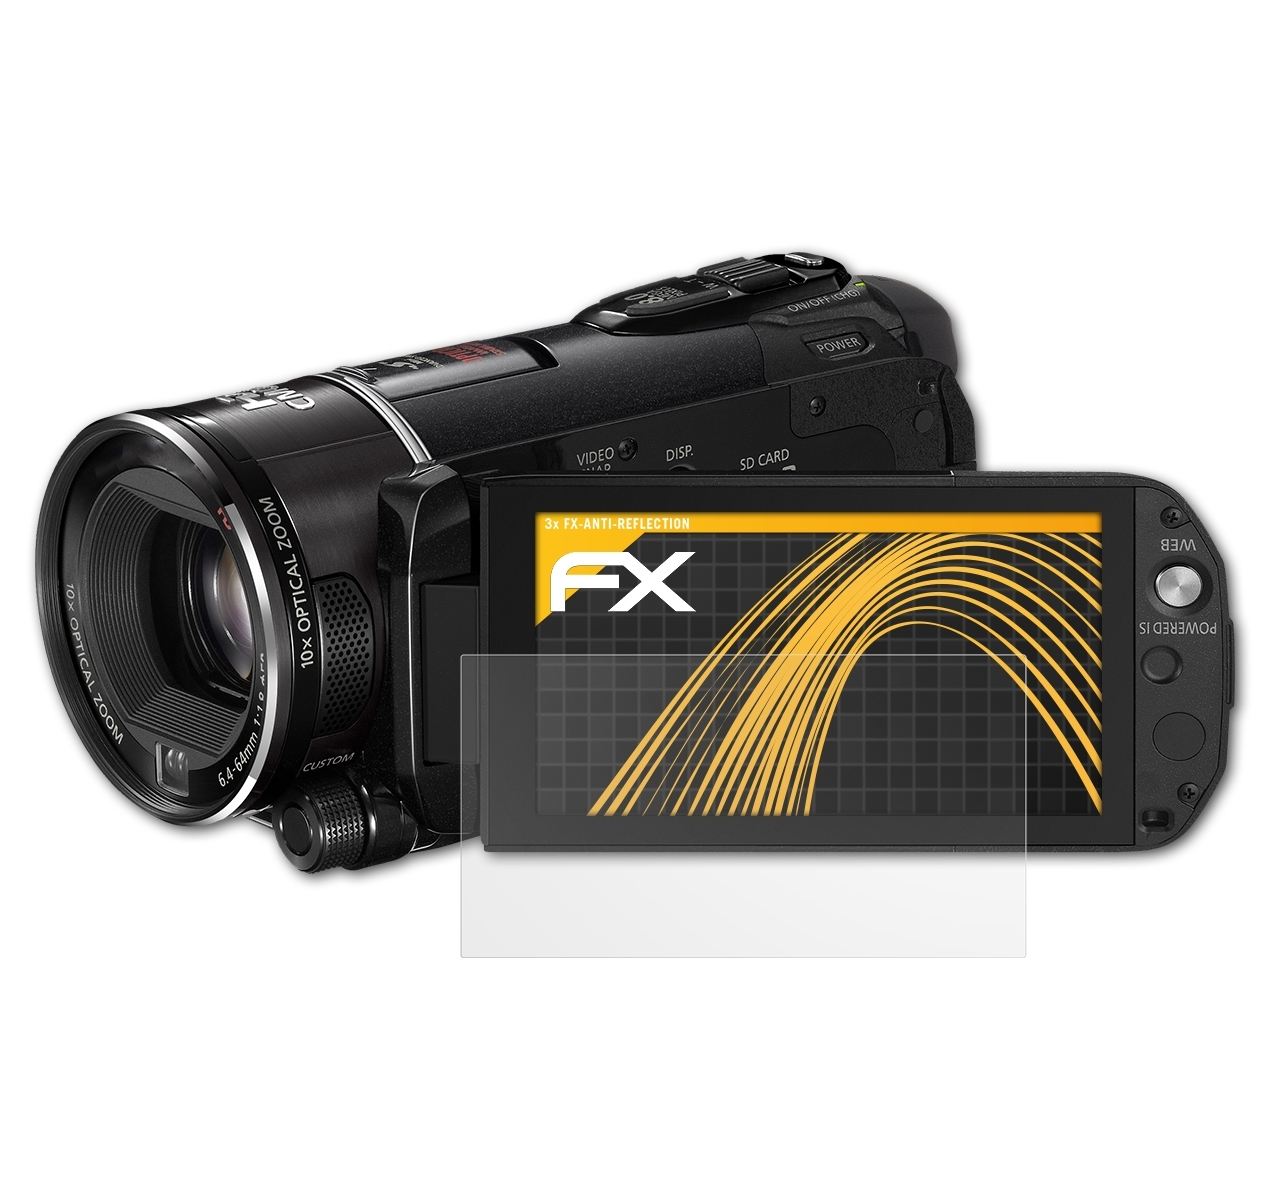 Legria FX-Antireflex Canon HF ATFOLIX 3x (Vixia) S21) Displayschutz(für